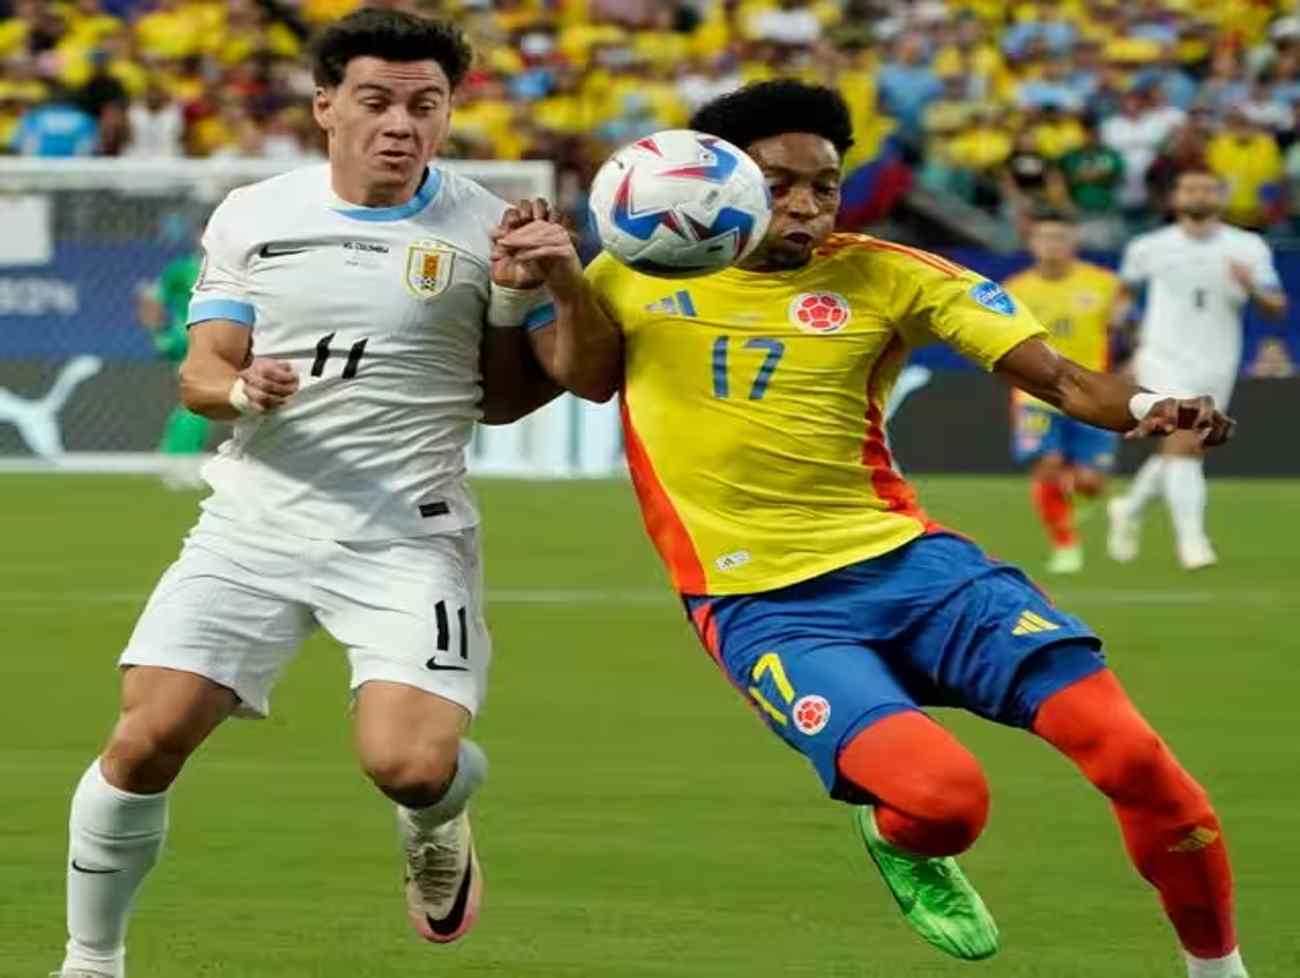 સેમિફાઇનલમાં કોલંબિયાએ ઉરુગ્વેને 1-0થી હરાવ્યું, કોપા અમેરિકાની ફાઇનલમાં આર્જેન્ટિના સામે ટક્કર